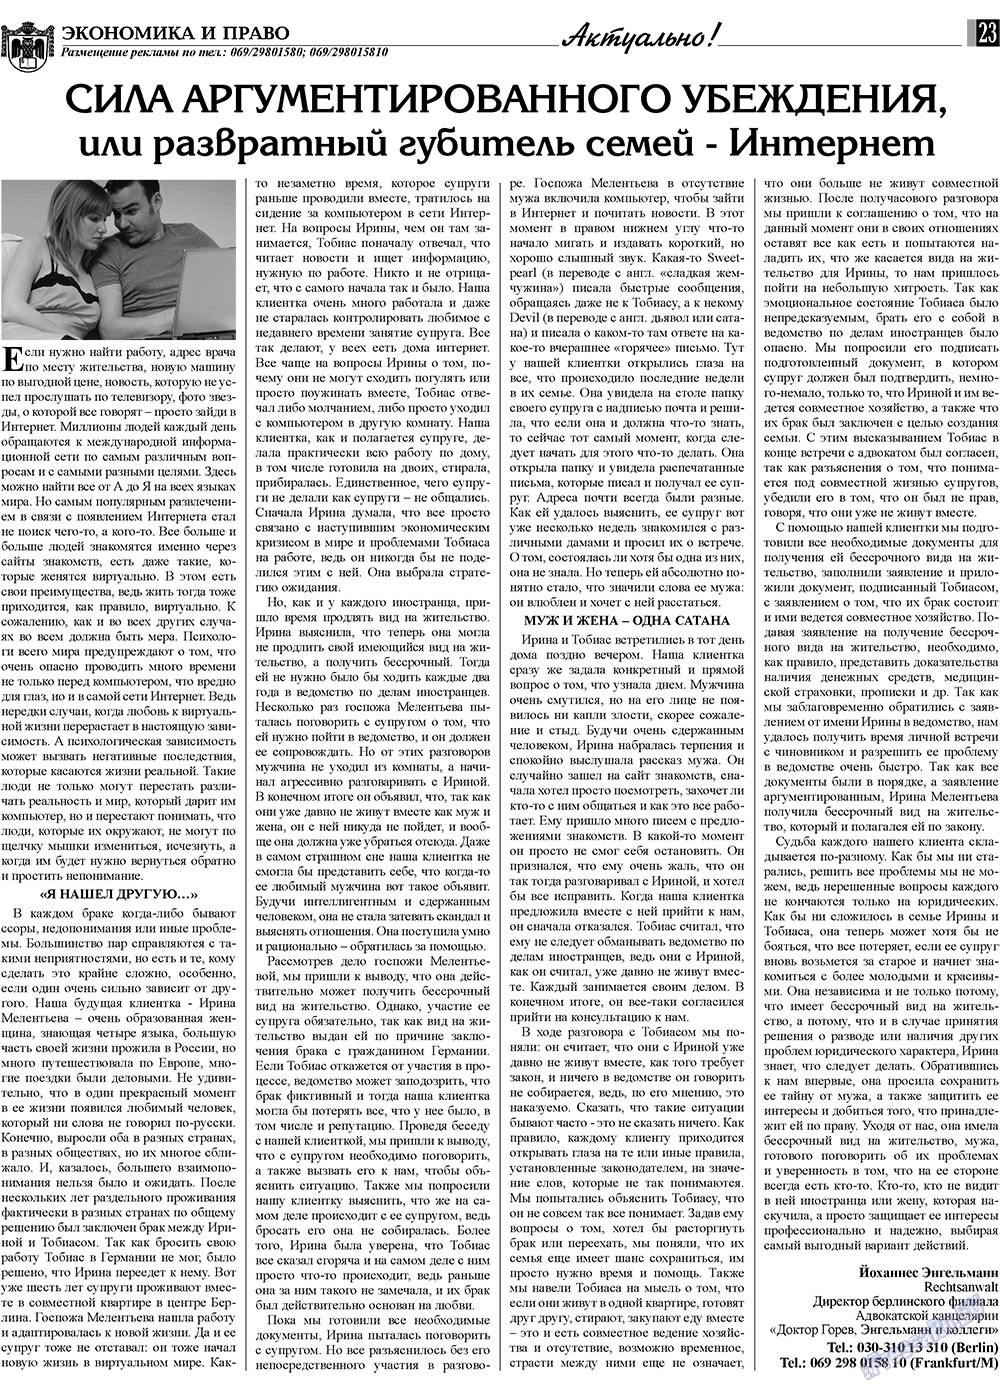 Экономика и право, газета. 2009 №10 стр.23